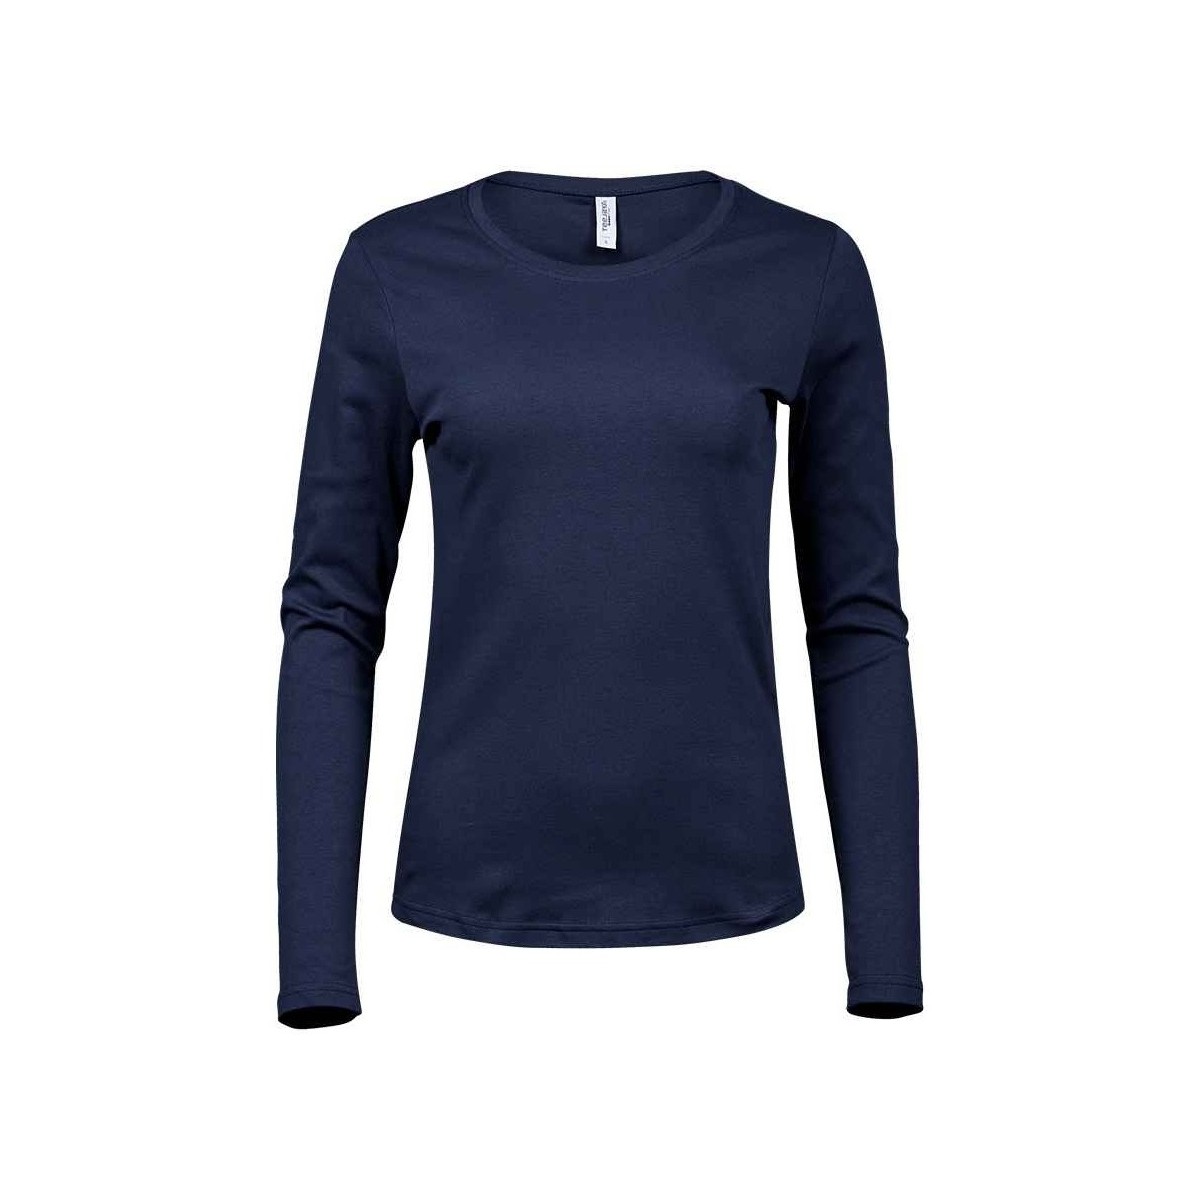 Vêtements Femme Brumbies Short Sleeve T-shirt Juniors Interlock Bleu